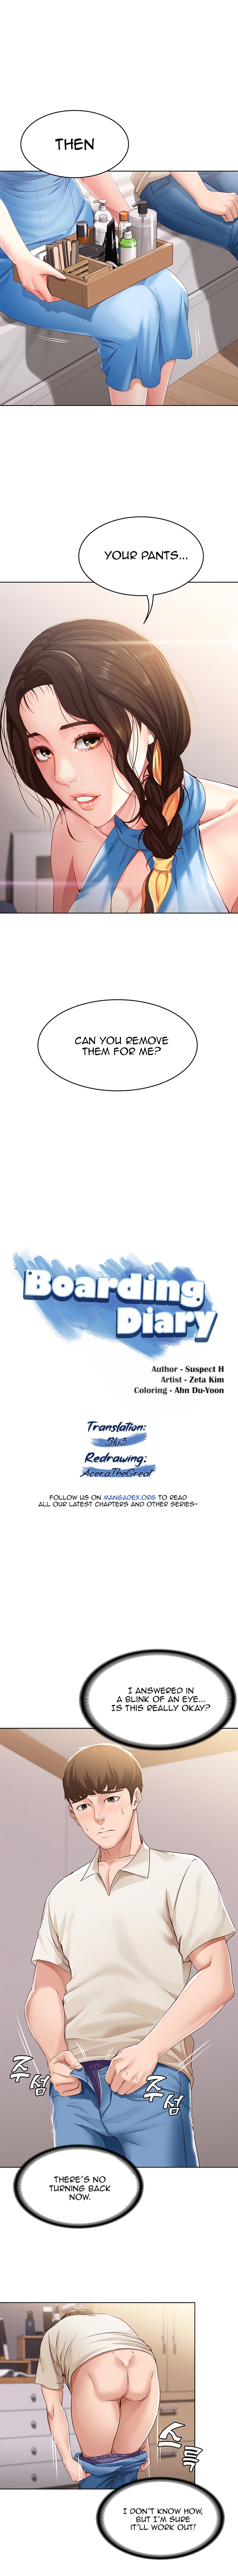 Read Manhwa boarding-diary, Read Manga boarding-diary Online